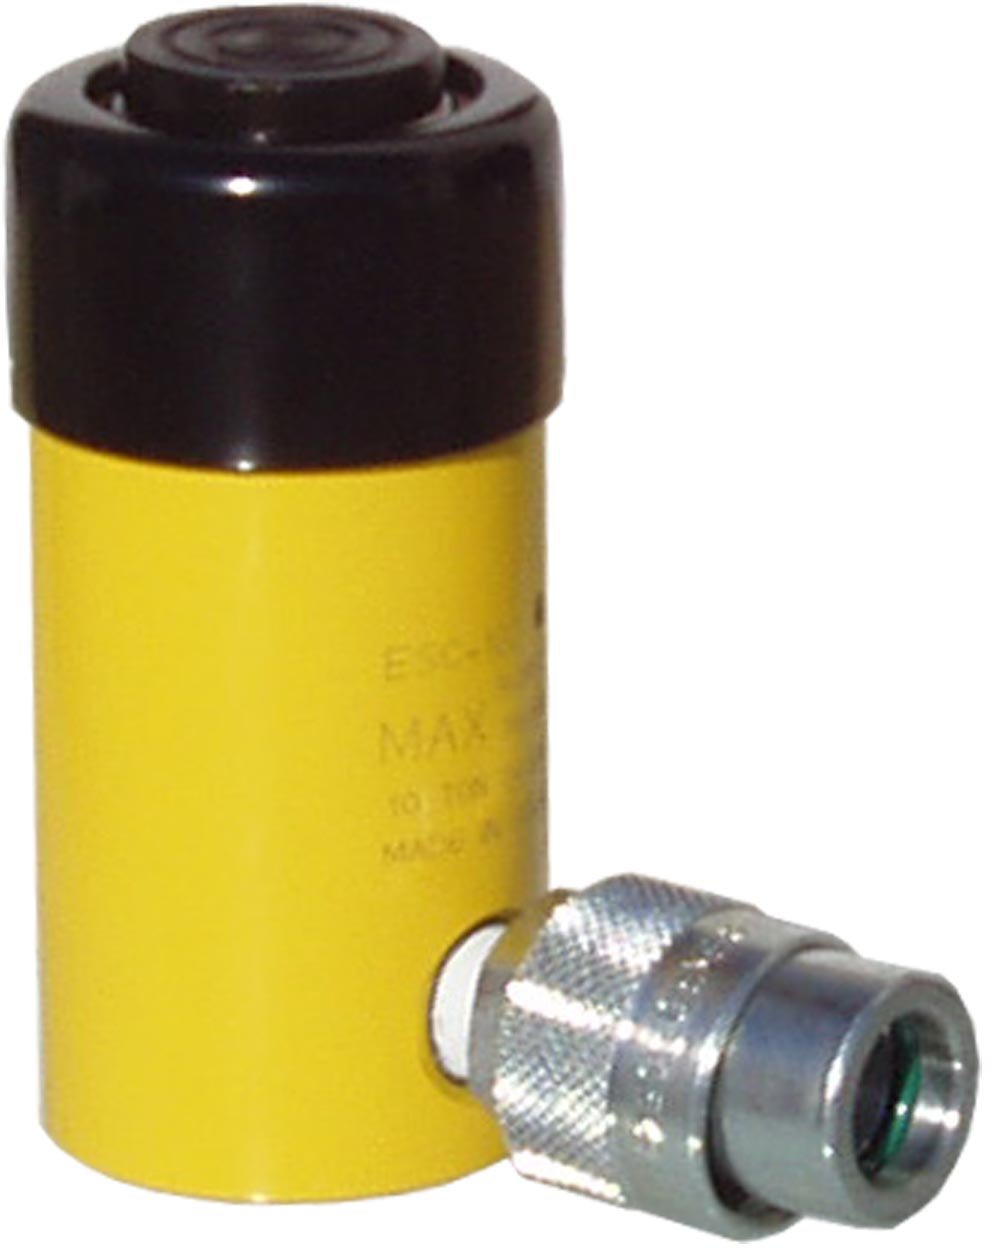 ESCO 10301 10 Ton Hydraulic Ram Cylinder, 2 in. Stroke - MPR Tools & Equipment